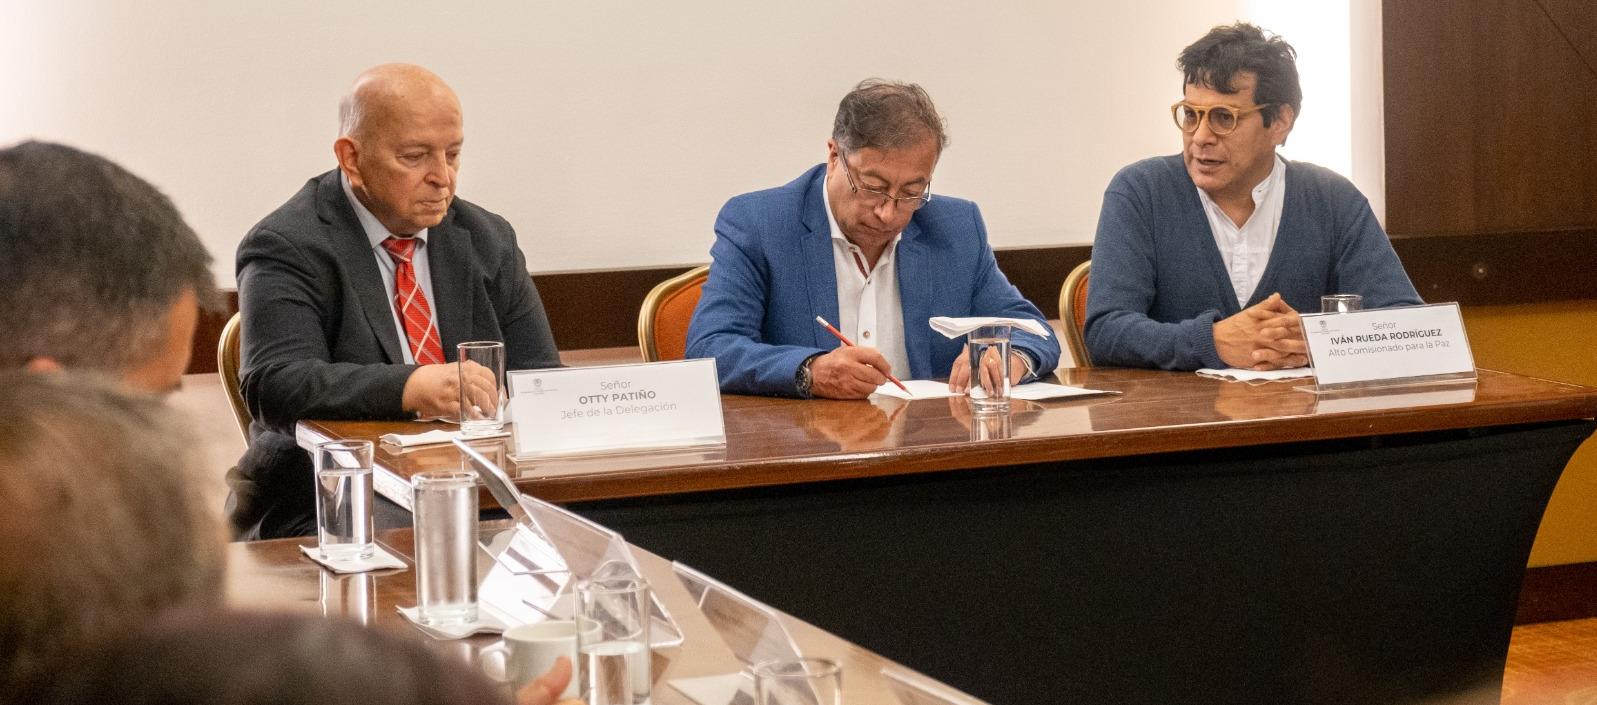 Otty Patiño, el Presidente Gustavo Petro y el alto comisionado Danilo Rueda.